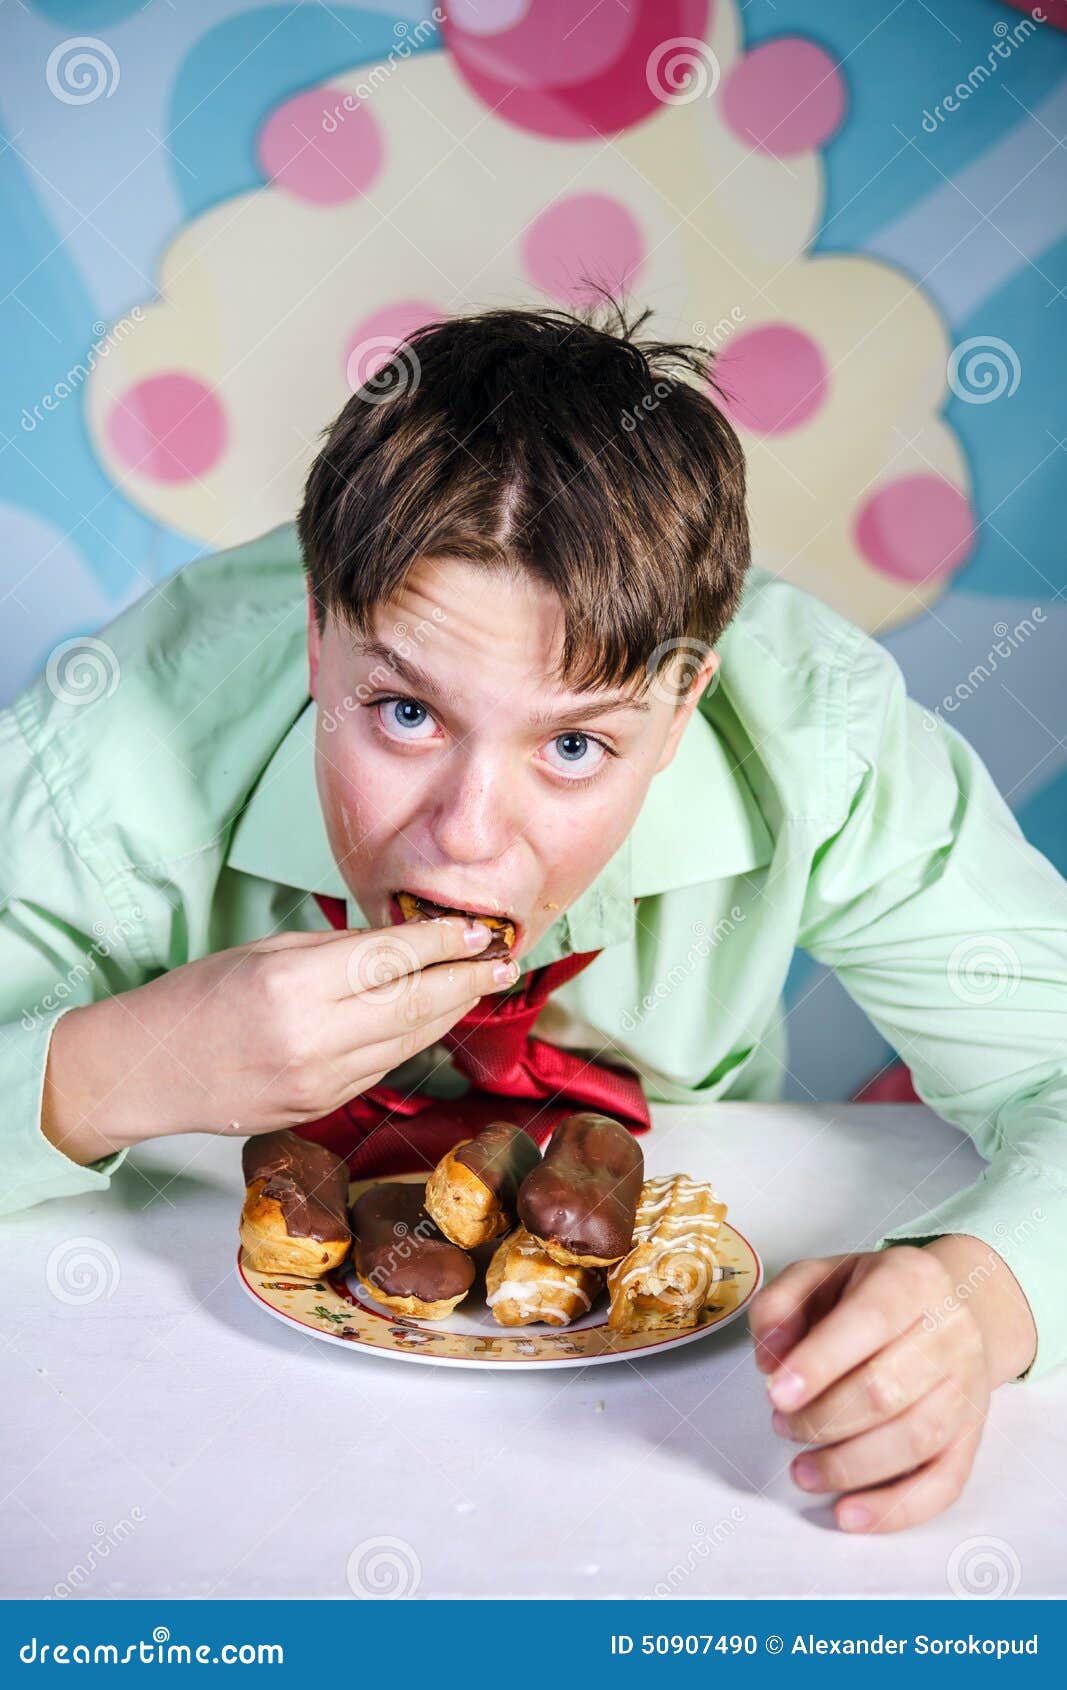 Мужик ест ребенка. Мальчик с конфетами. Мальчик ест сладости. Мальчик ест пирожное. Мальчик ест конфеты.